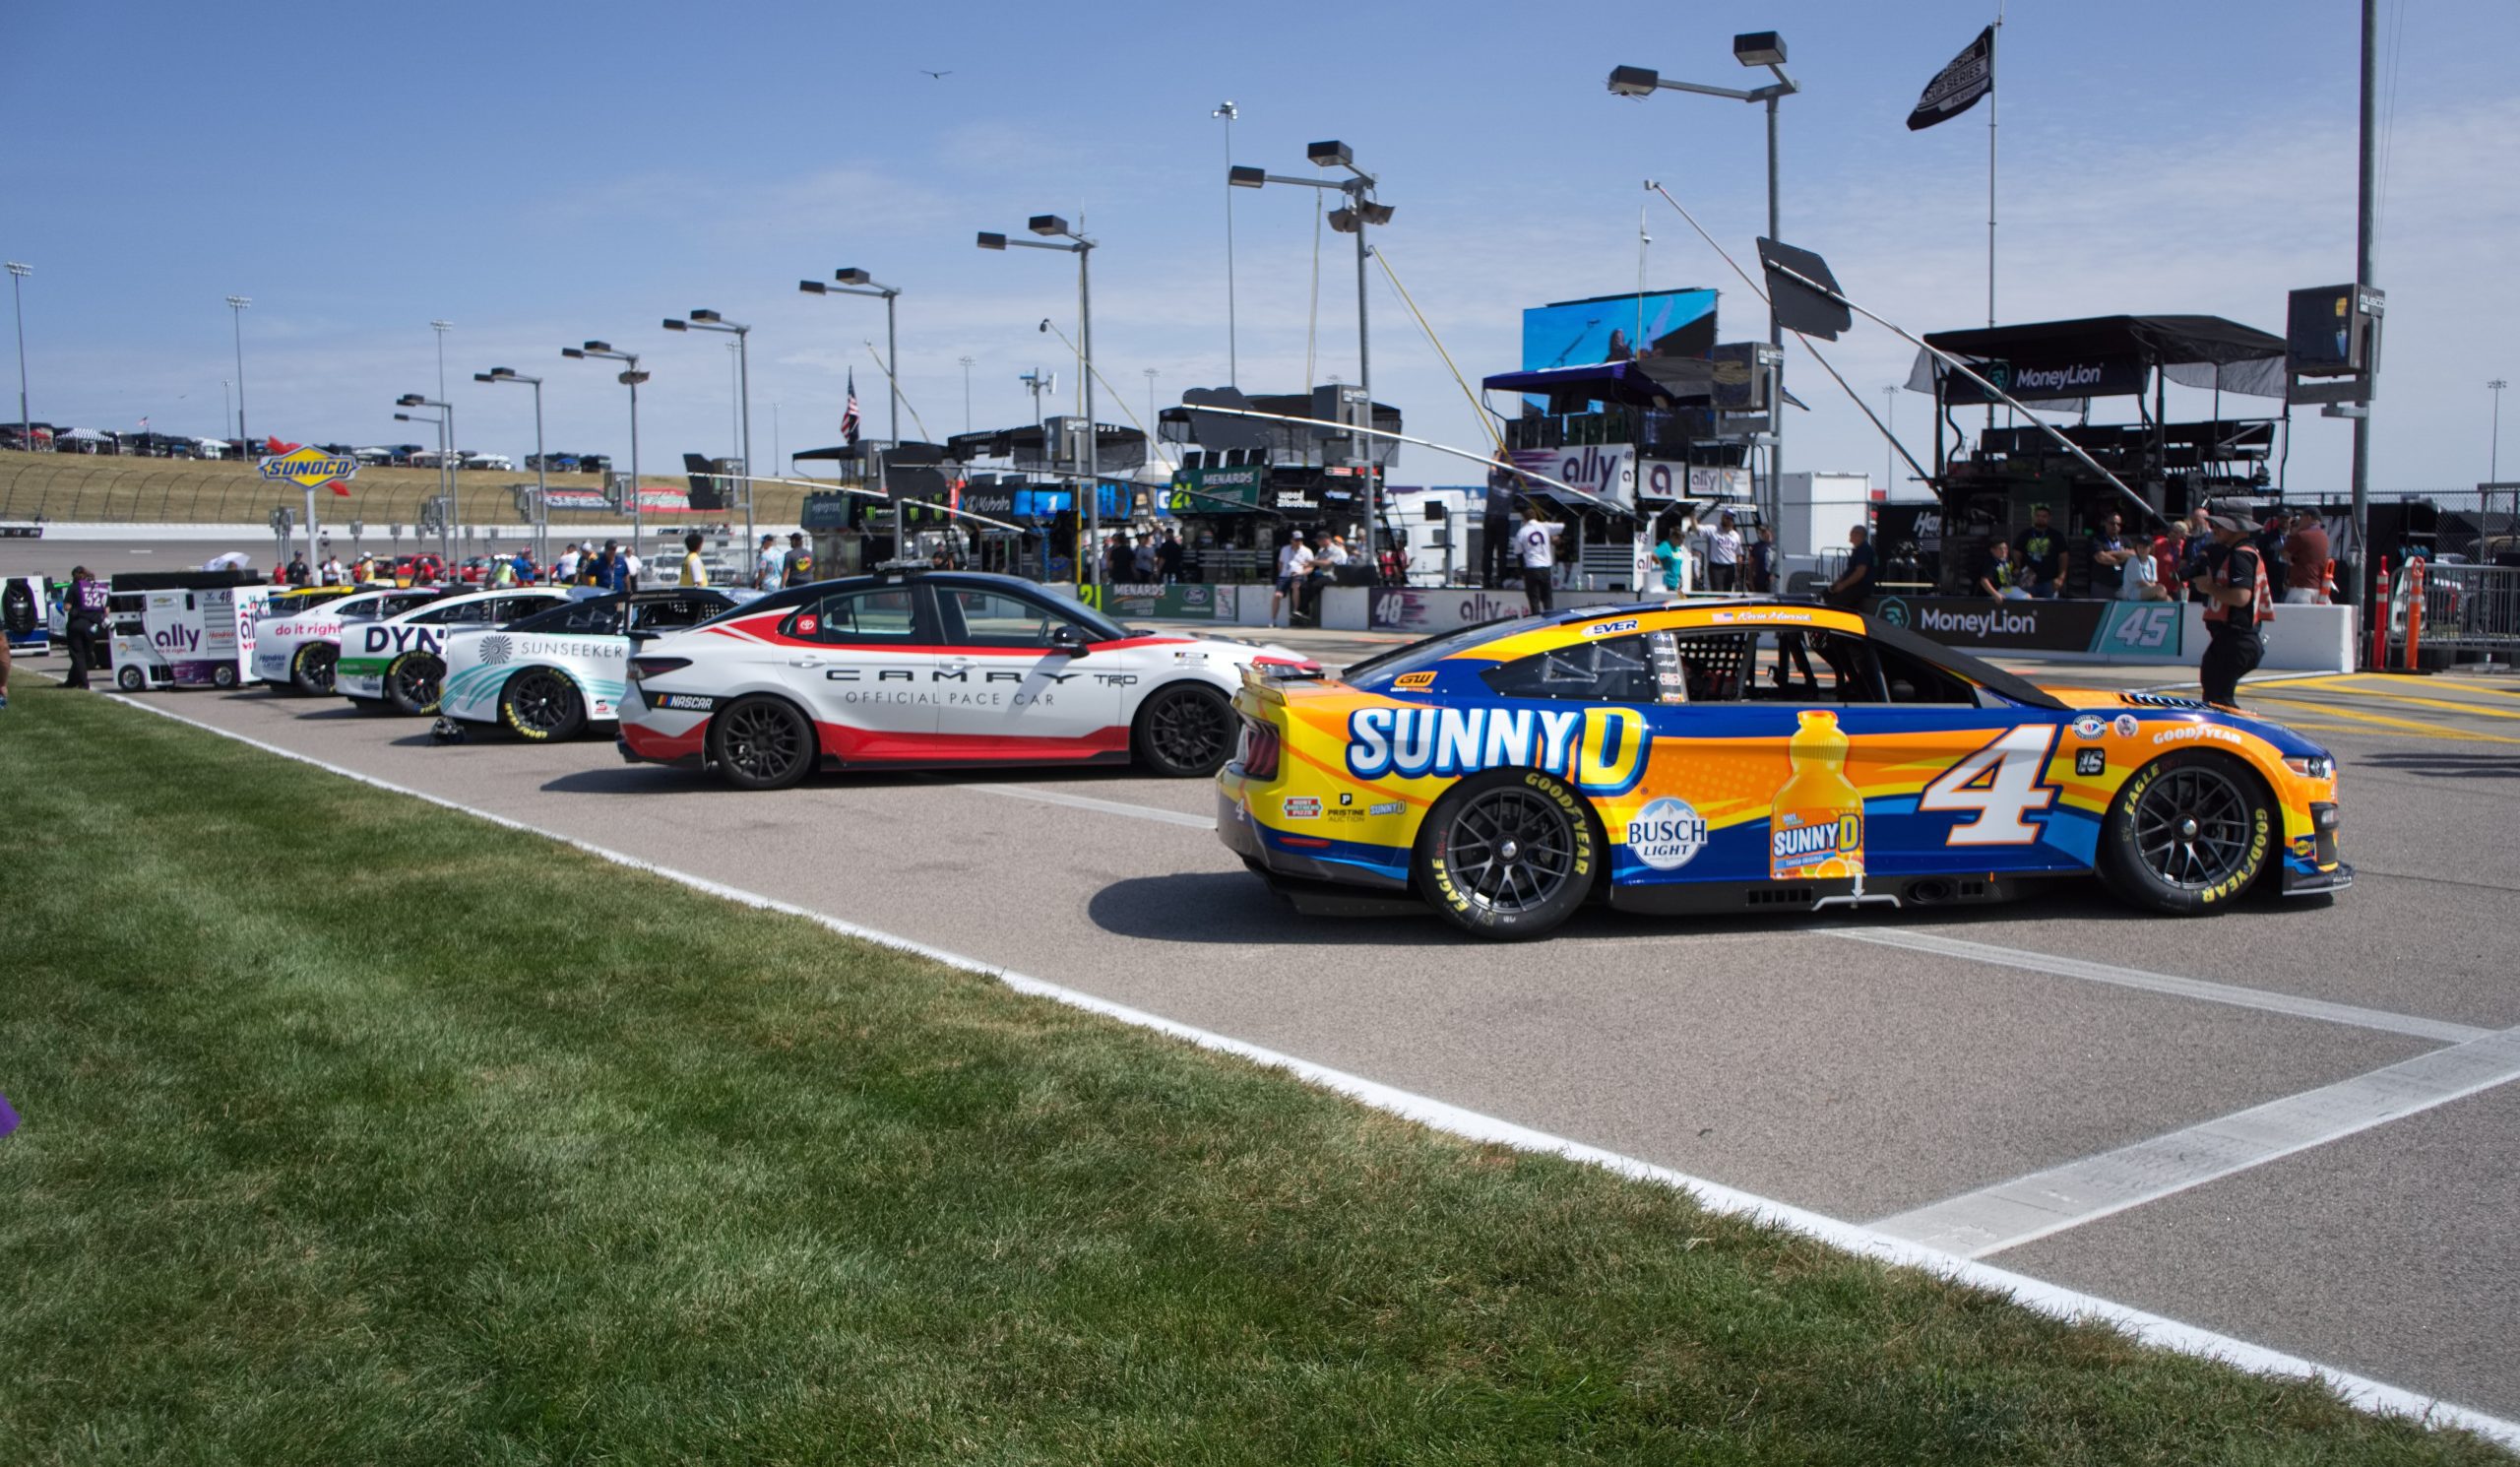 As corridas NASCAR contam com carros modificados e altamente potentes.